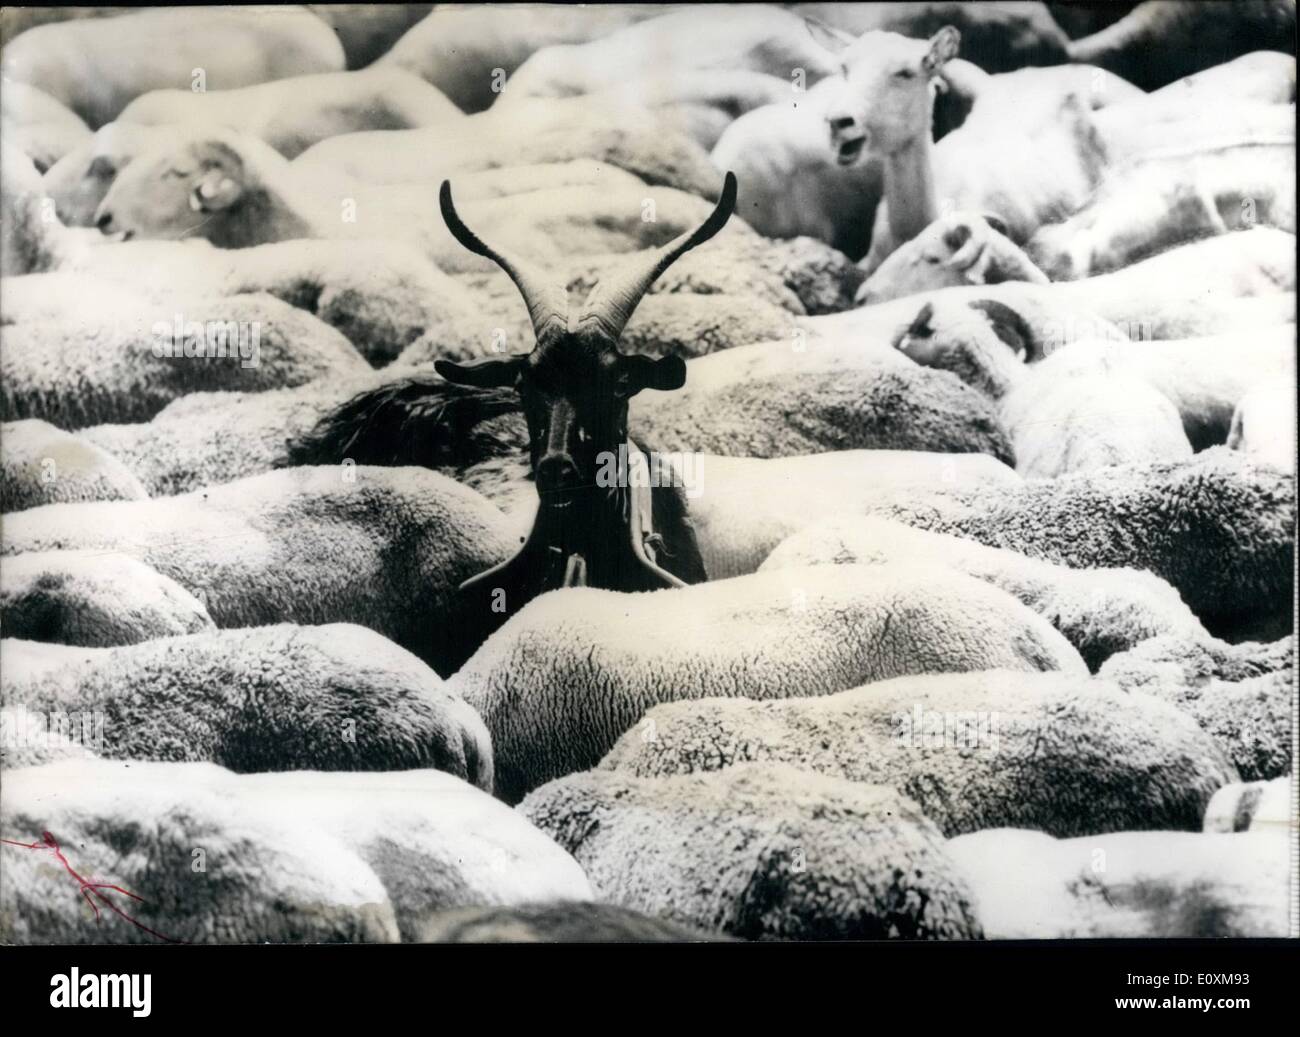 Avril 04, 1967 - La ''bête noire'' de ce troupeau est unobjectionably cette chèvre... ! L'éleveur de ce groupe, qui erre sur les terres du sud de la France, estime le bouc sa ''mascot.'' Denis Noel comme Georges Aminel comme Andromaque et Pyrrhus Banque D'Images